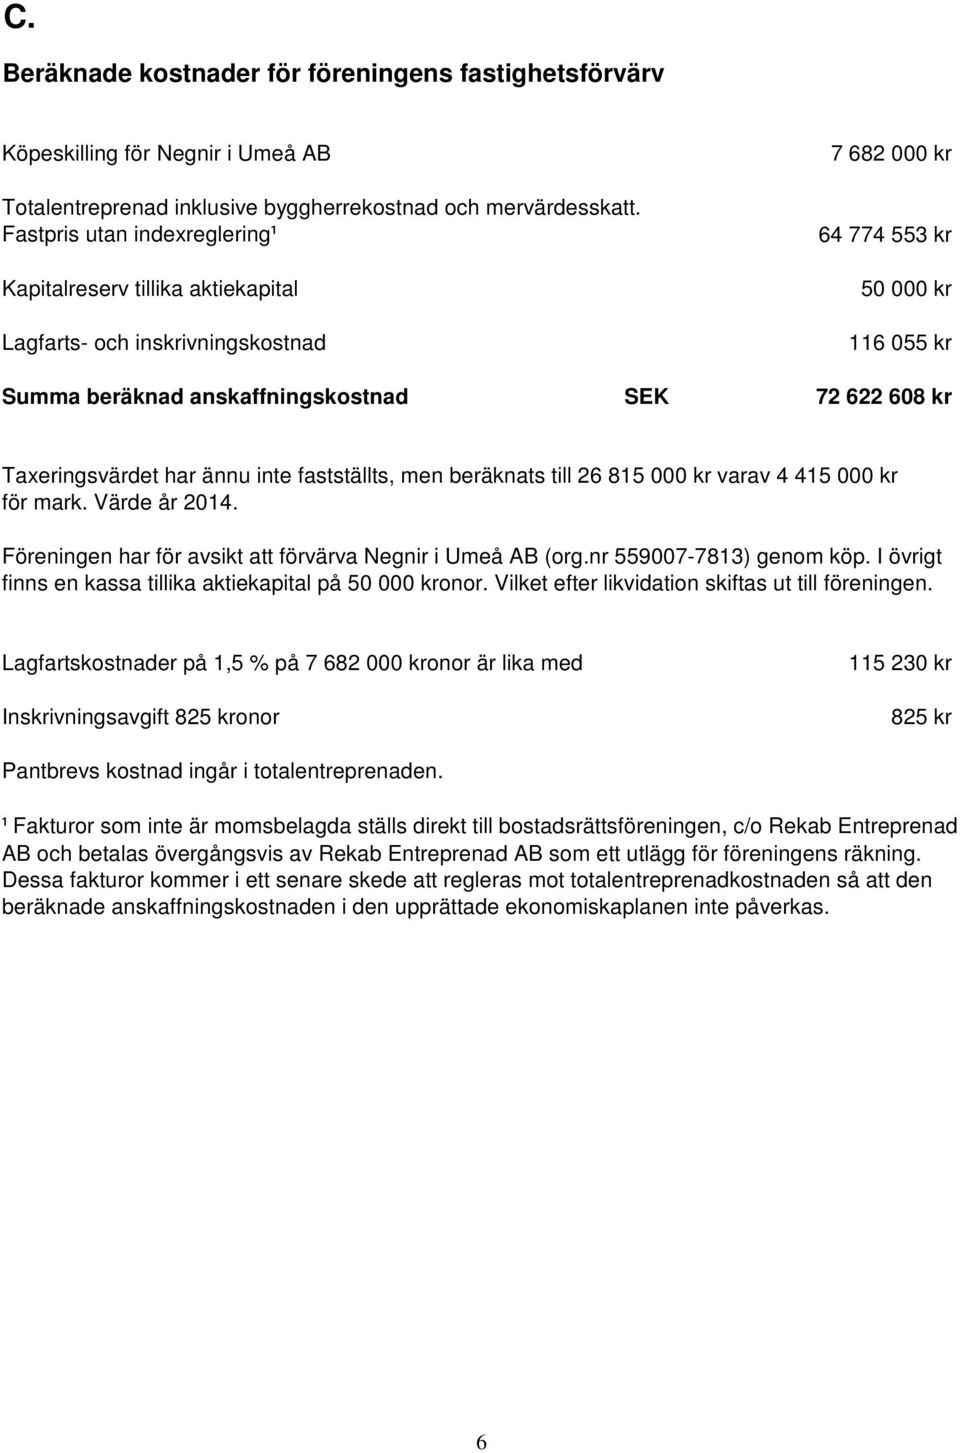 Taxeringsvärdet har ännu inte fastställts, men beräknats till 26 815 000 kr varav 4 415 000 kr för mark. Värde år 2014. Föreningen har för avsikt att förvärva Negnir i Umeå AB (org.